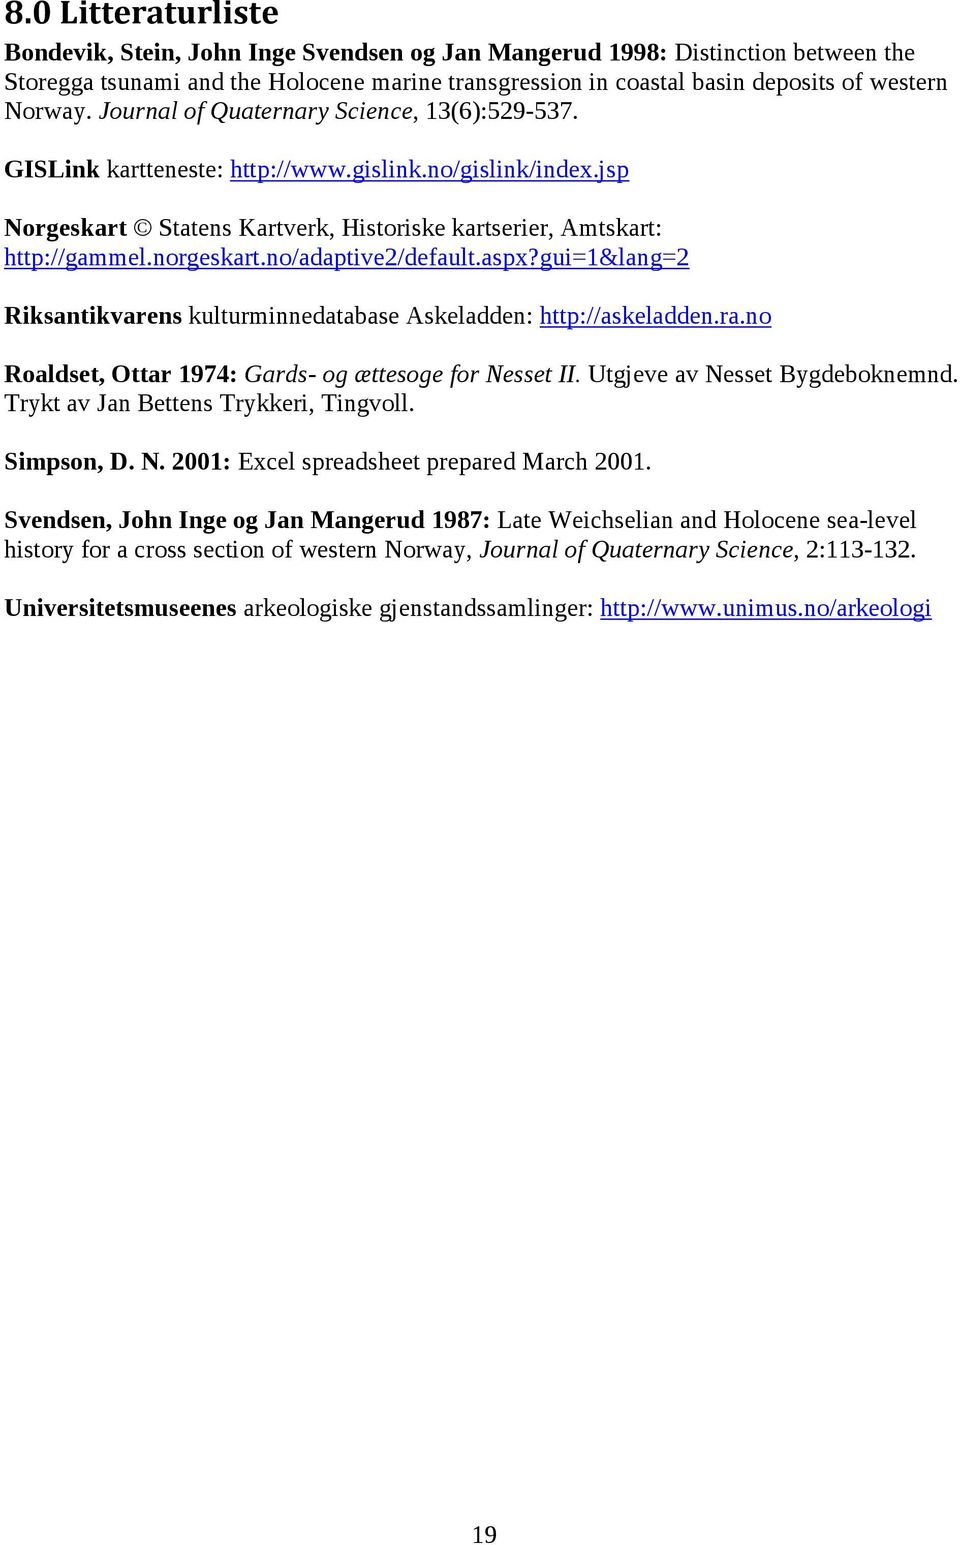 norgeskart.no/adaptive2/default.aspx?gui=1&lang=2 Riksantikvarens kulturminnedatabase Askeladden: http://askeladden.ra.no Roaldset, Ottar 1974: Gards- og ættesoge for Nesset II.